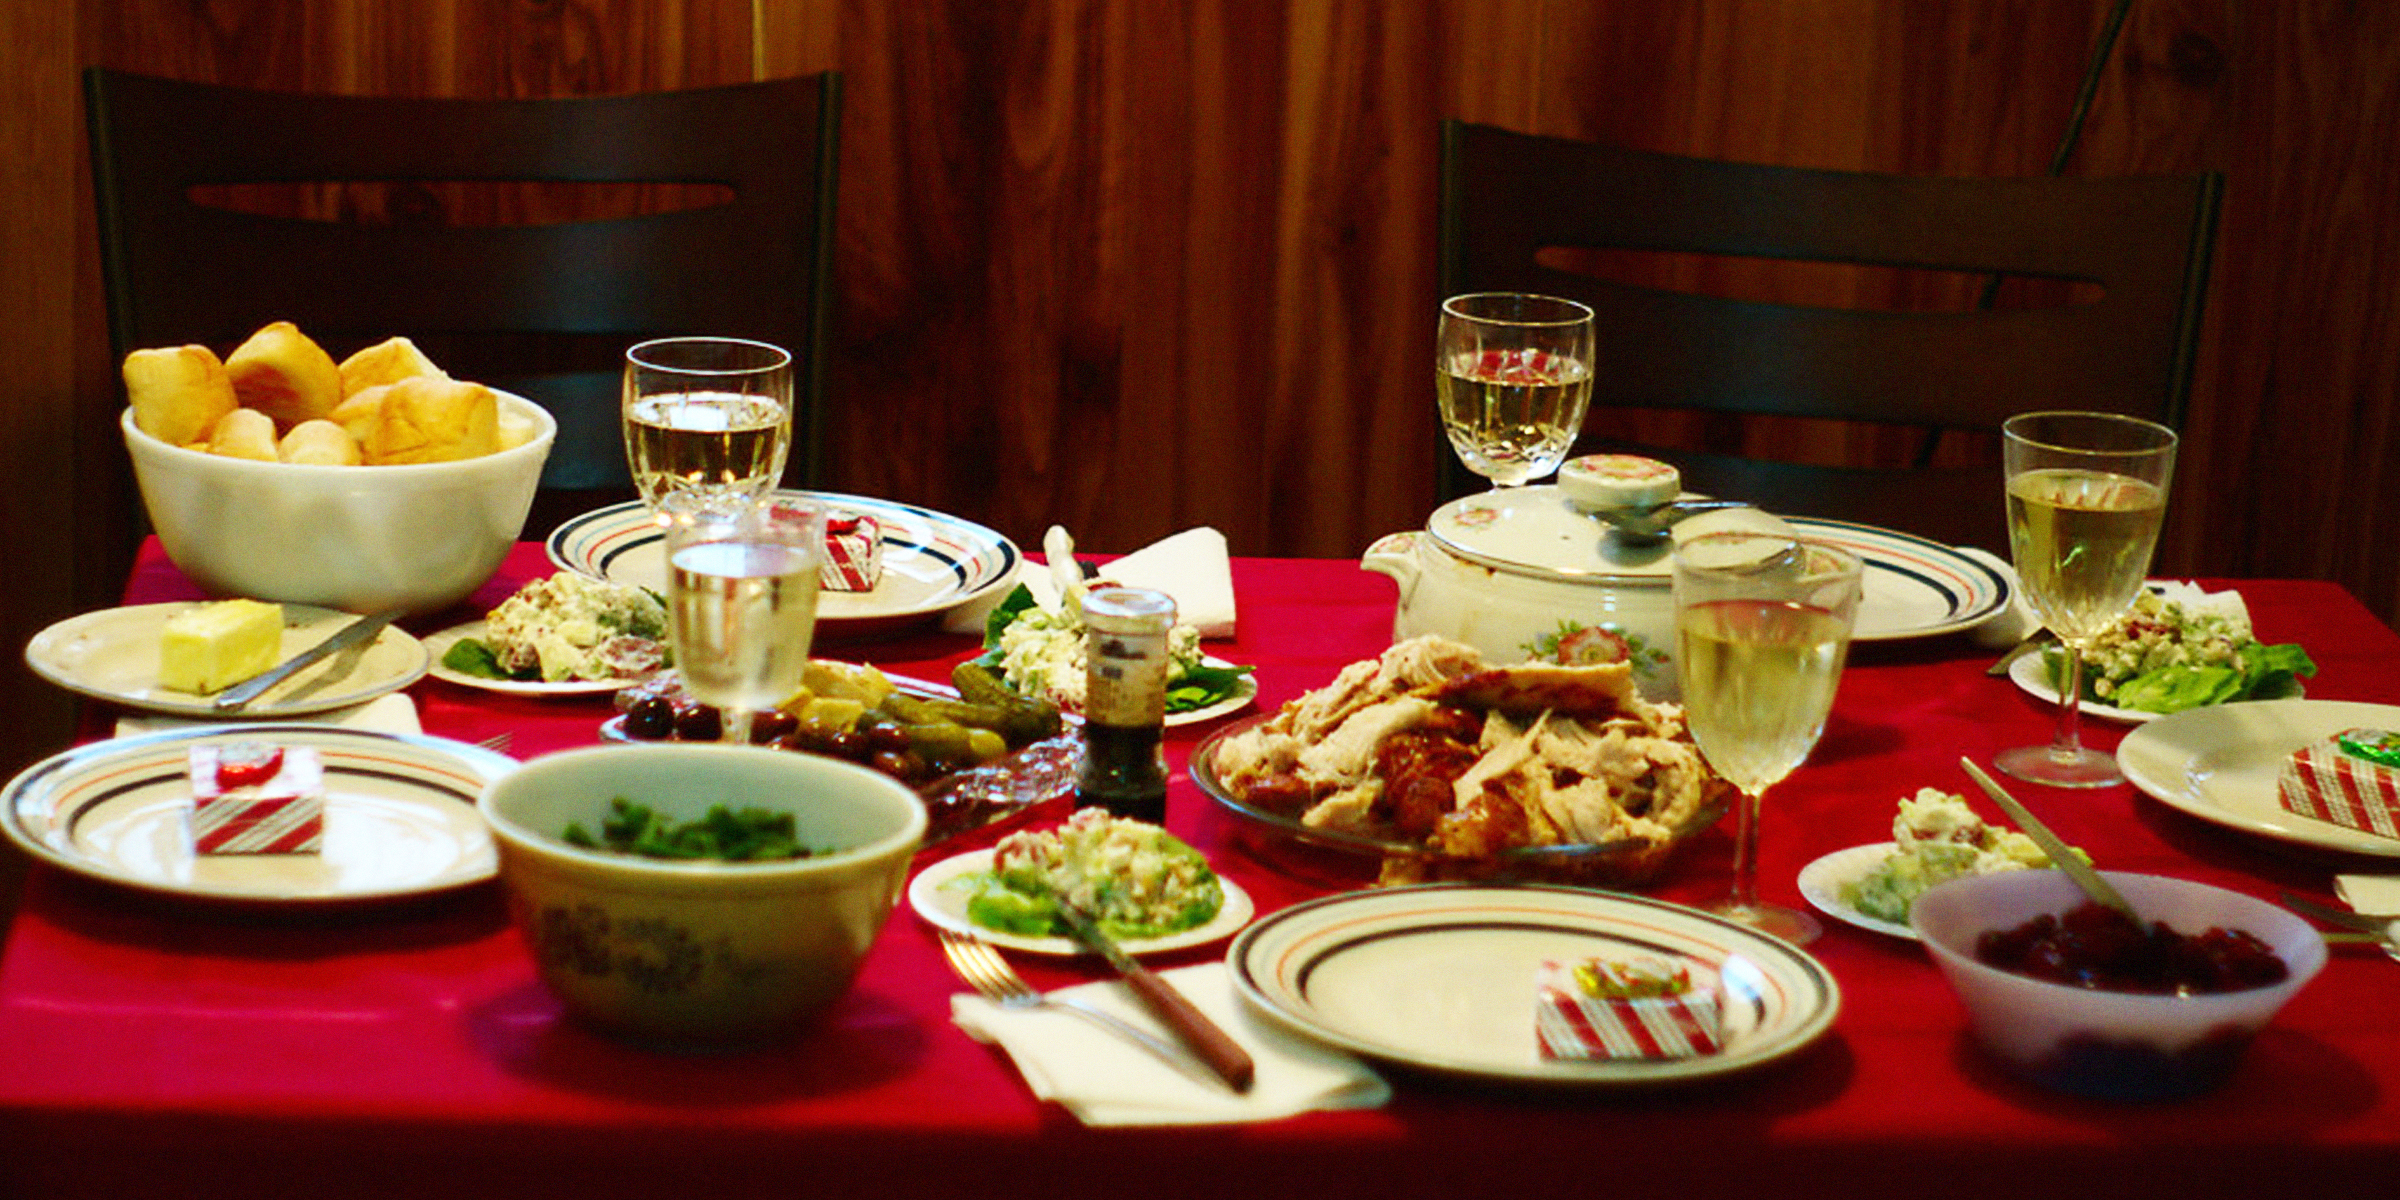 Tisch voller Essen | Quelle: Flickr